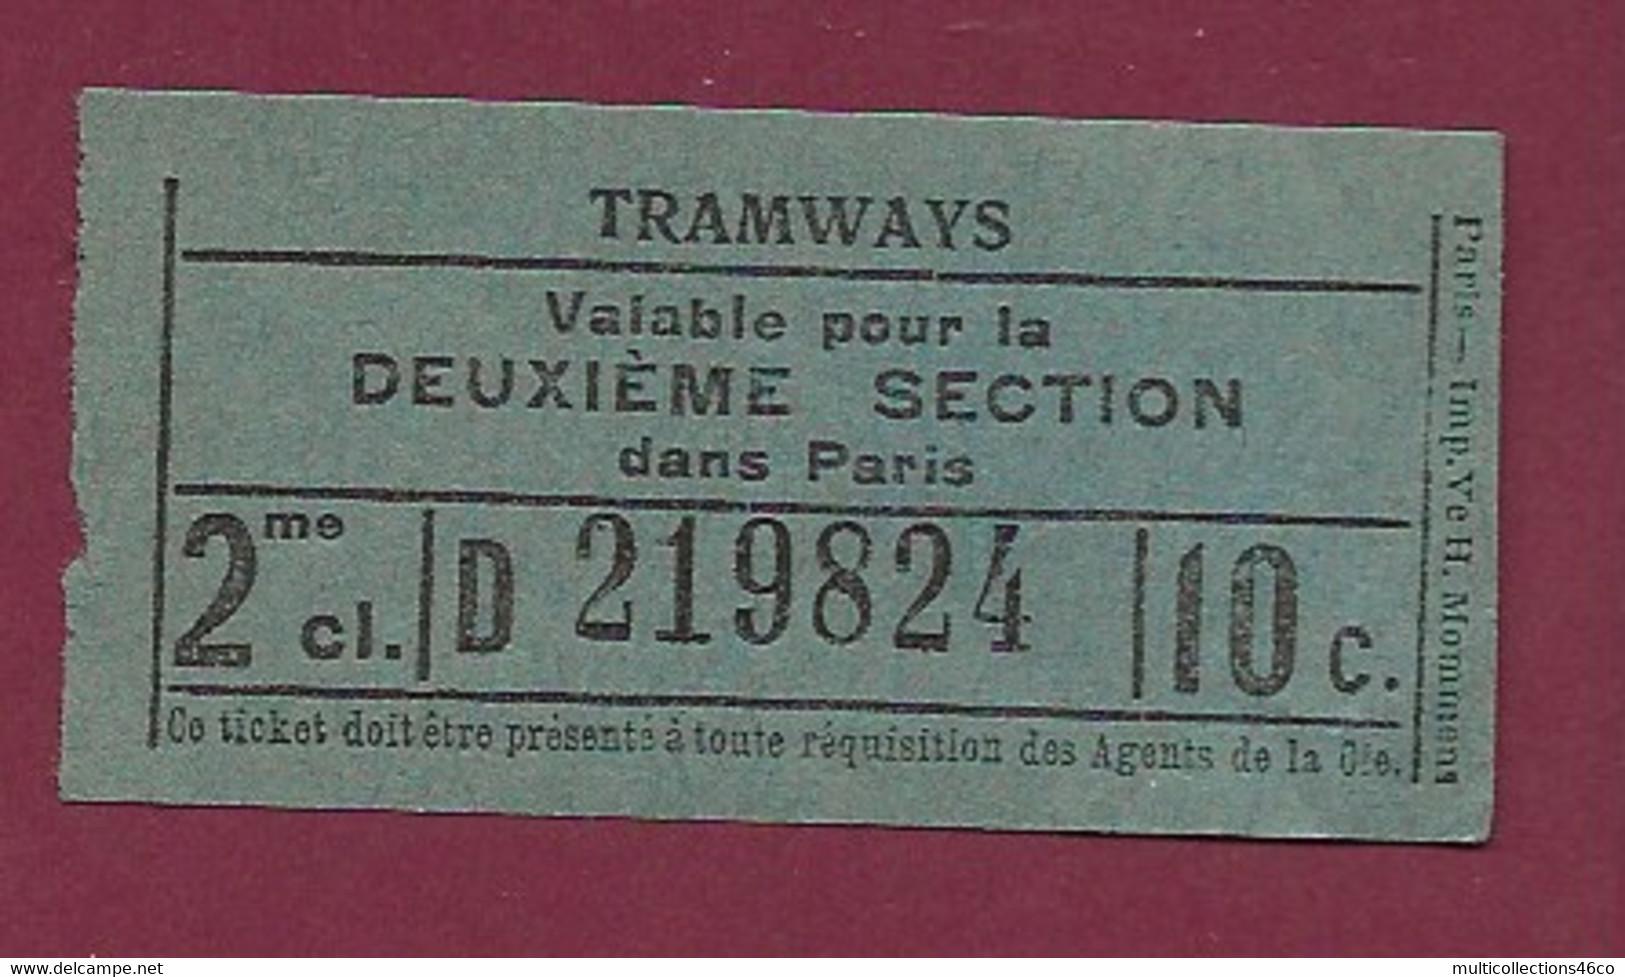 171020 - TICKET TRAMWAYS Valable Pour La Deuxième Section Dans Paris 2me Cl. D219824 10c - Europe